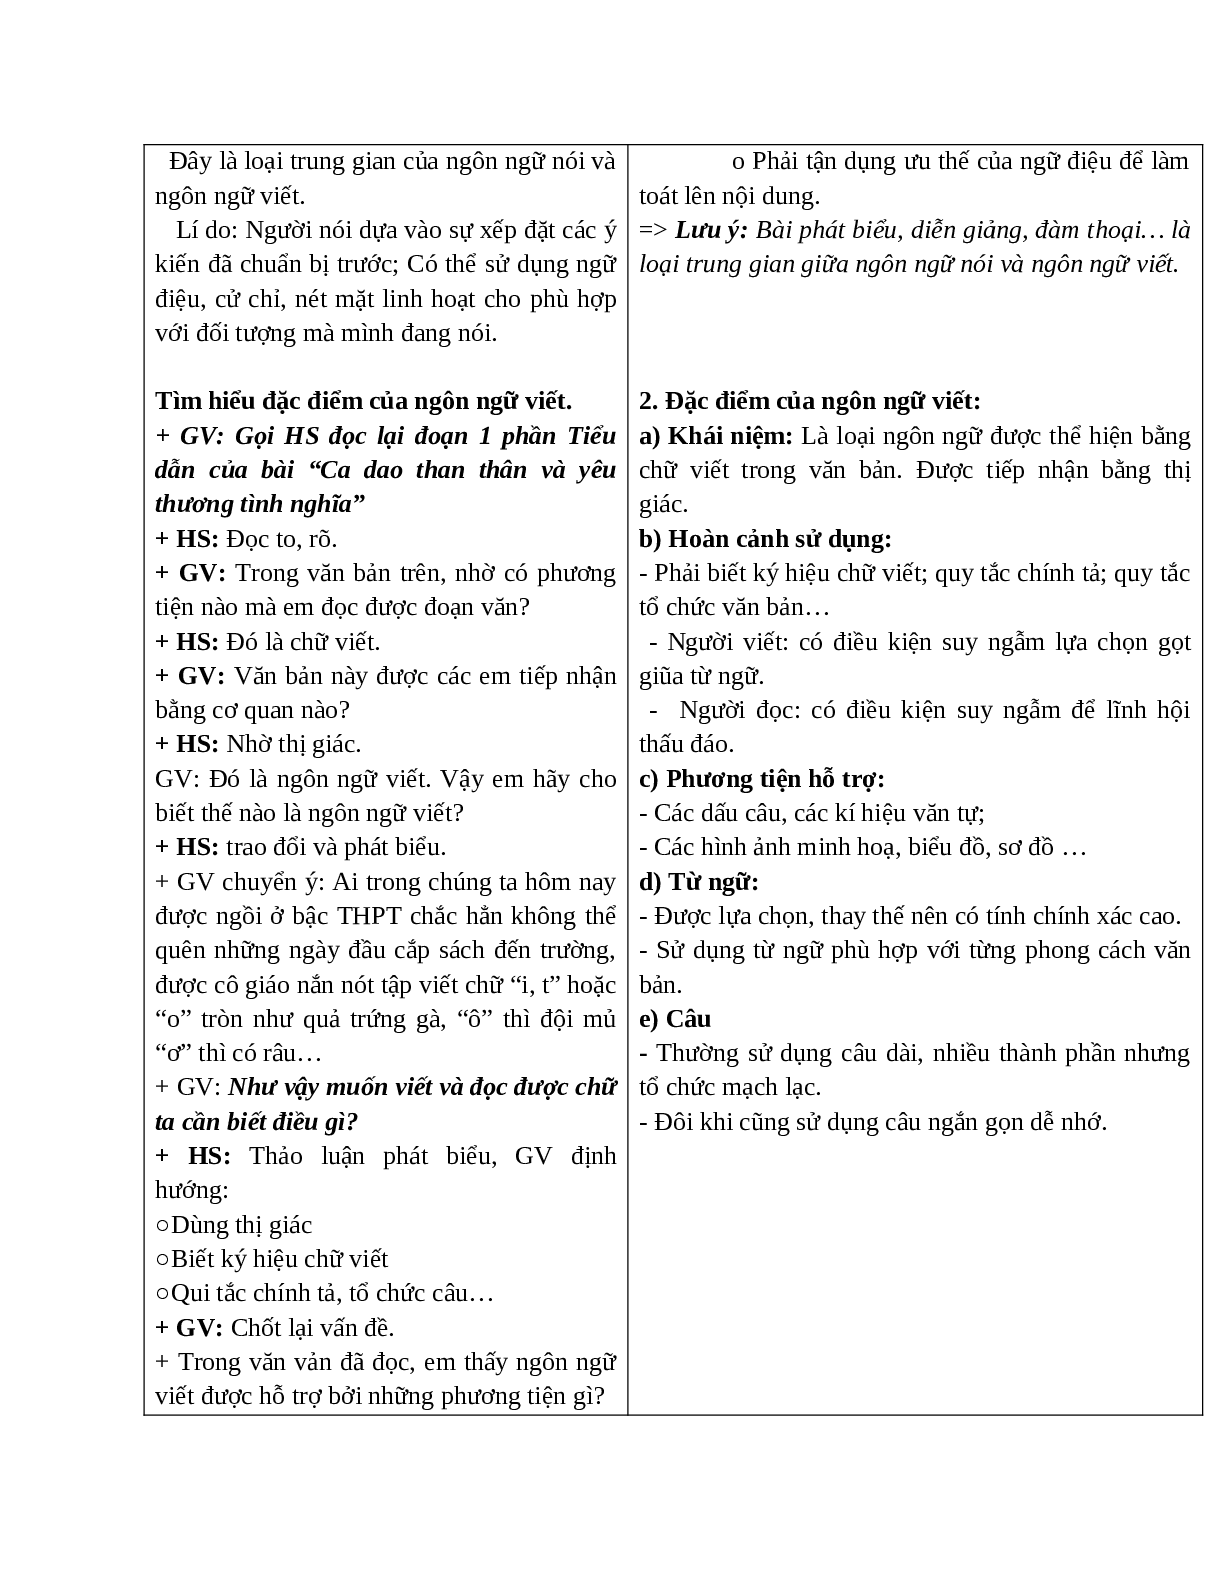 Giáo án Ngữ văn 10 tập 1 bài Đặc điểm của ngôn ngữ nói và ngôn ngữ viết mới nhất (trang 4)